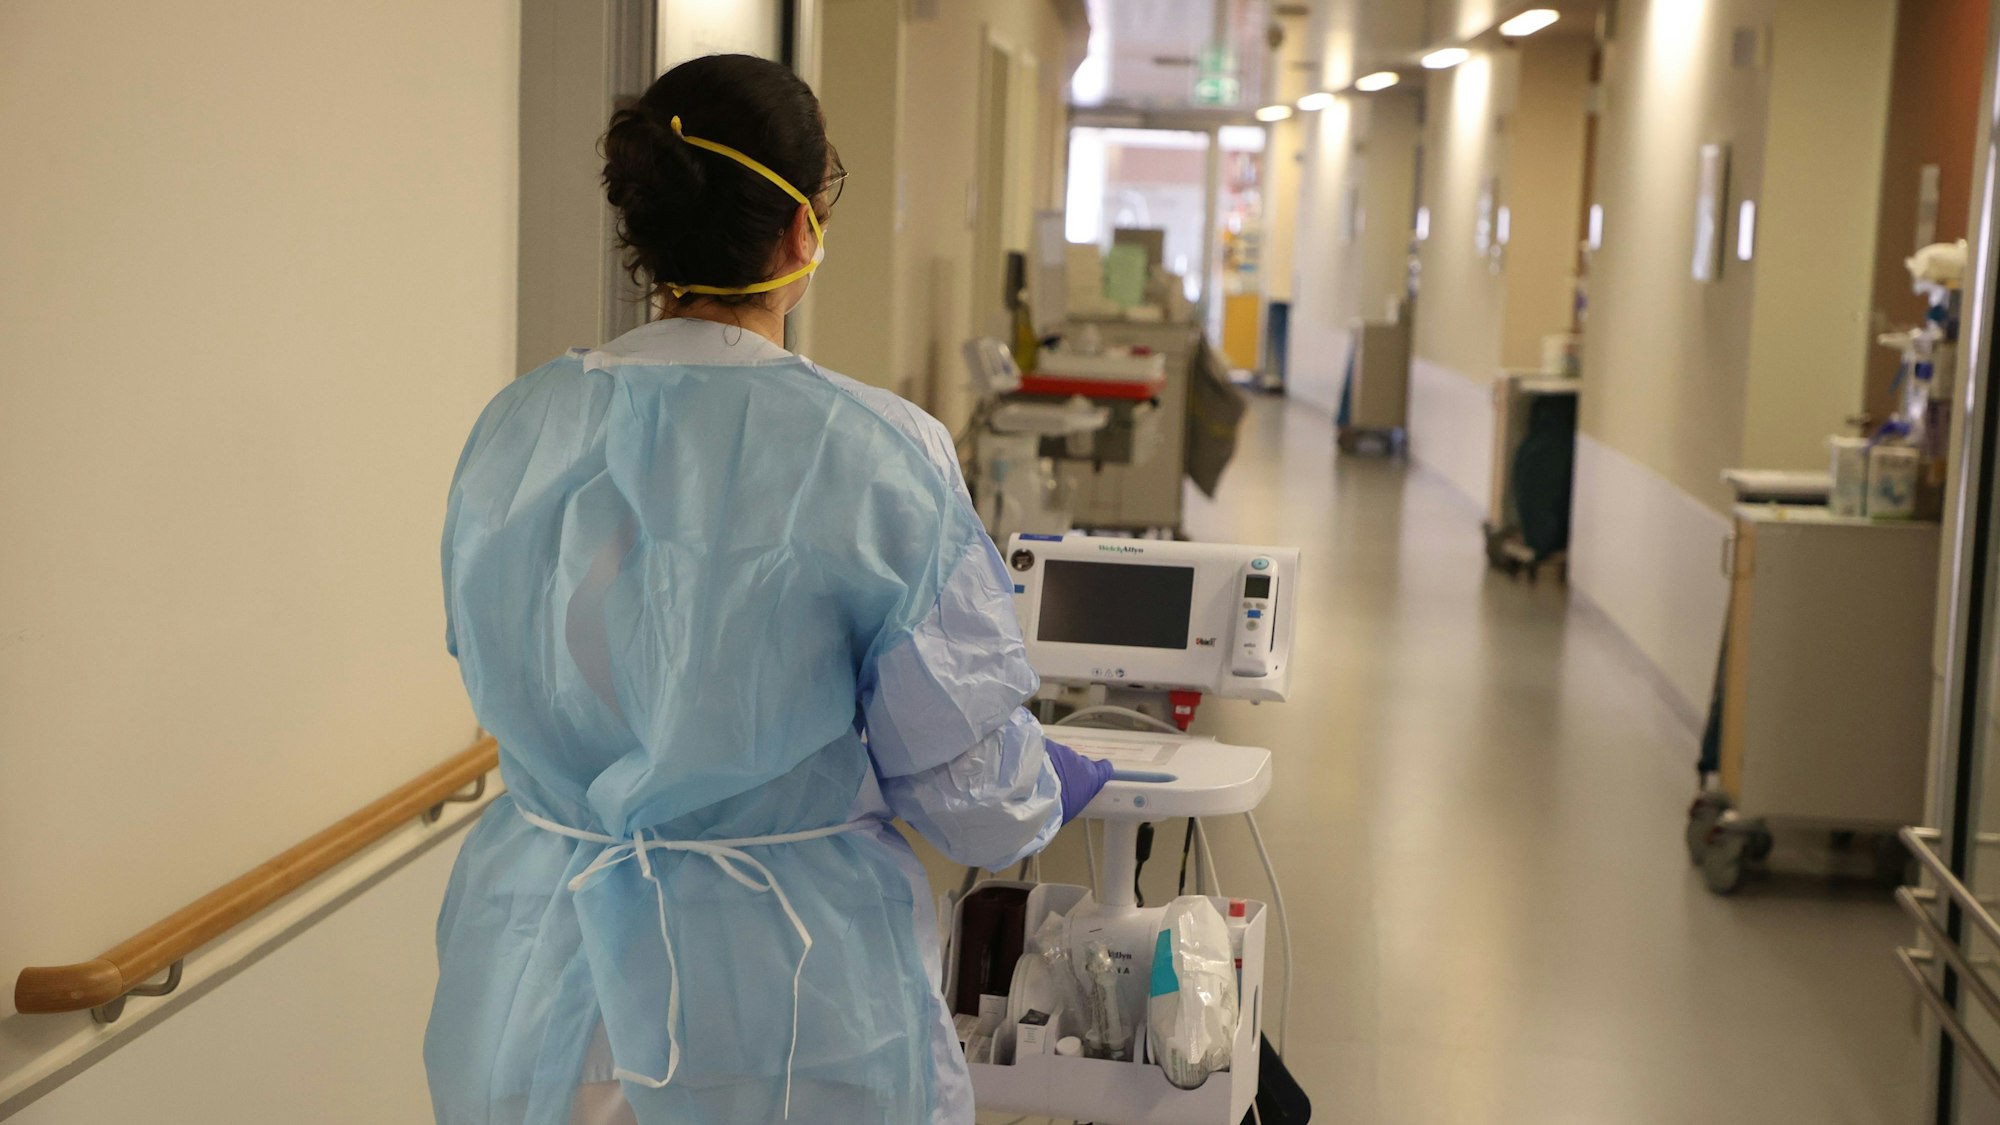 Eine Krankenschwester läuft mit medizinischem Gerät auf dem Flur der Corona-Station im Krankenhaus entlang. Das Bild wurde am 13. Januar 2022 aufgenommen.